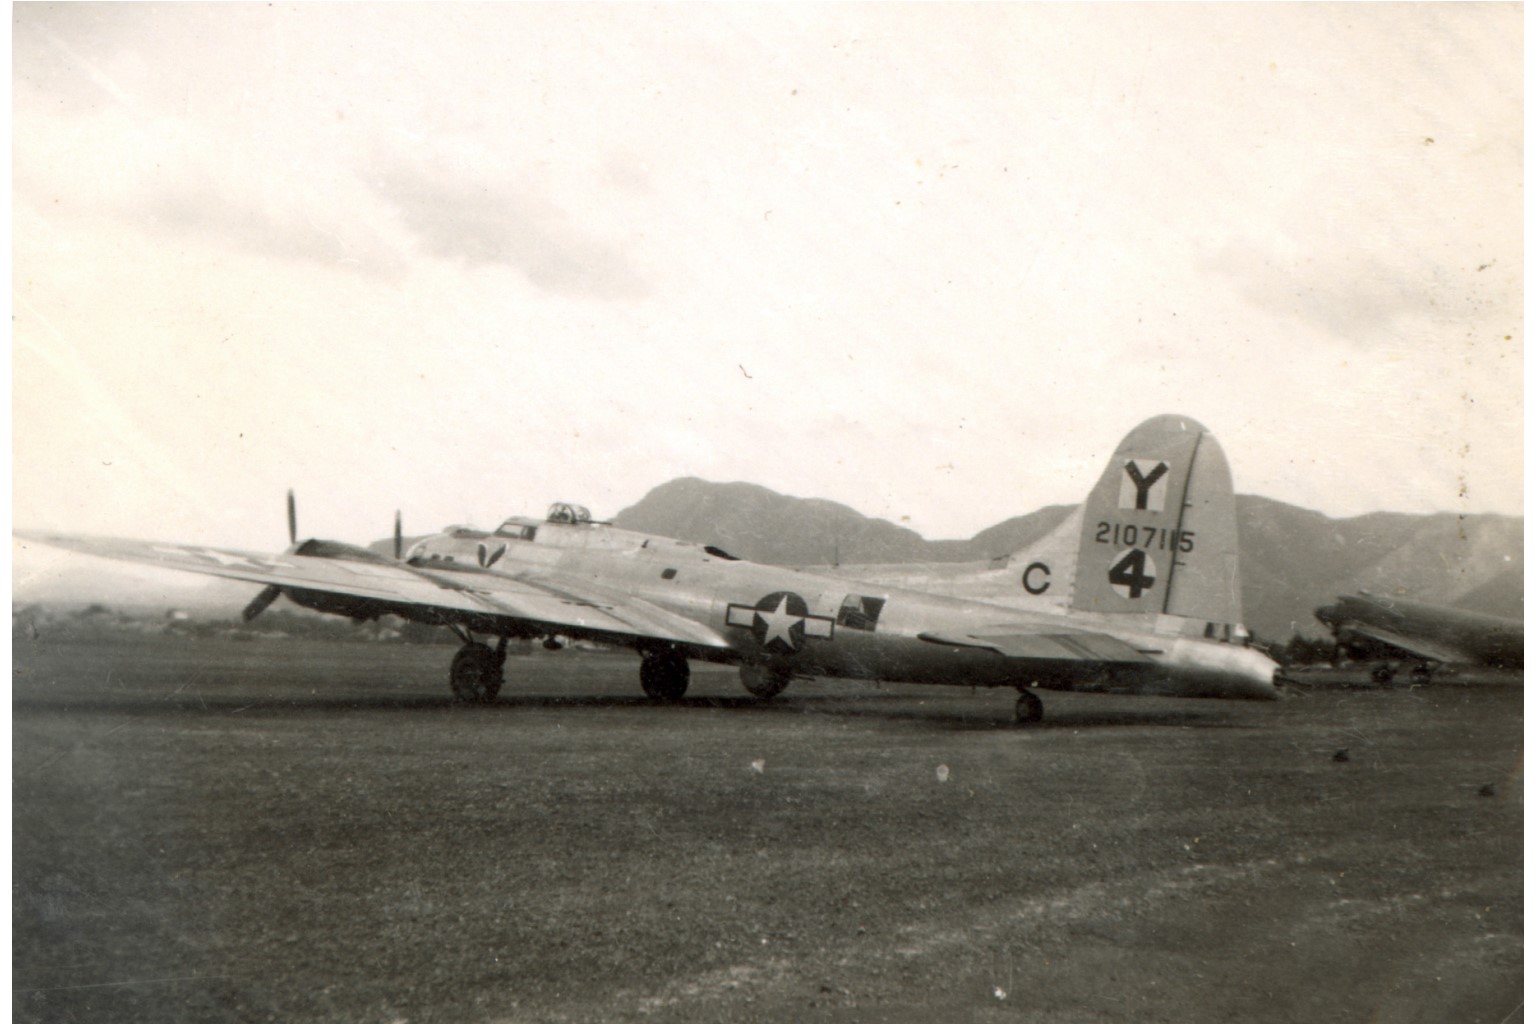 B-17 42-107115